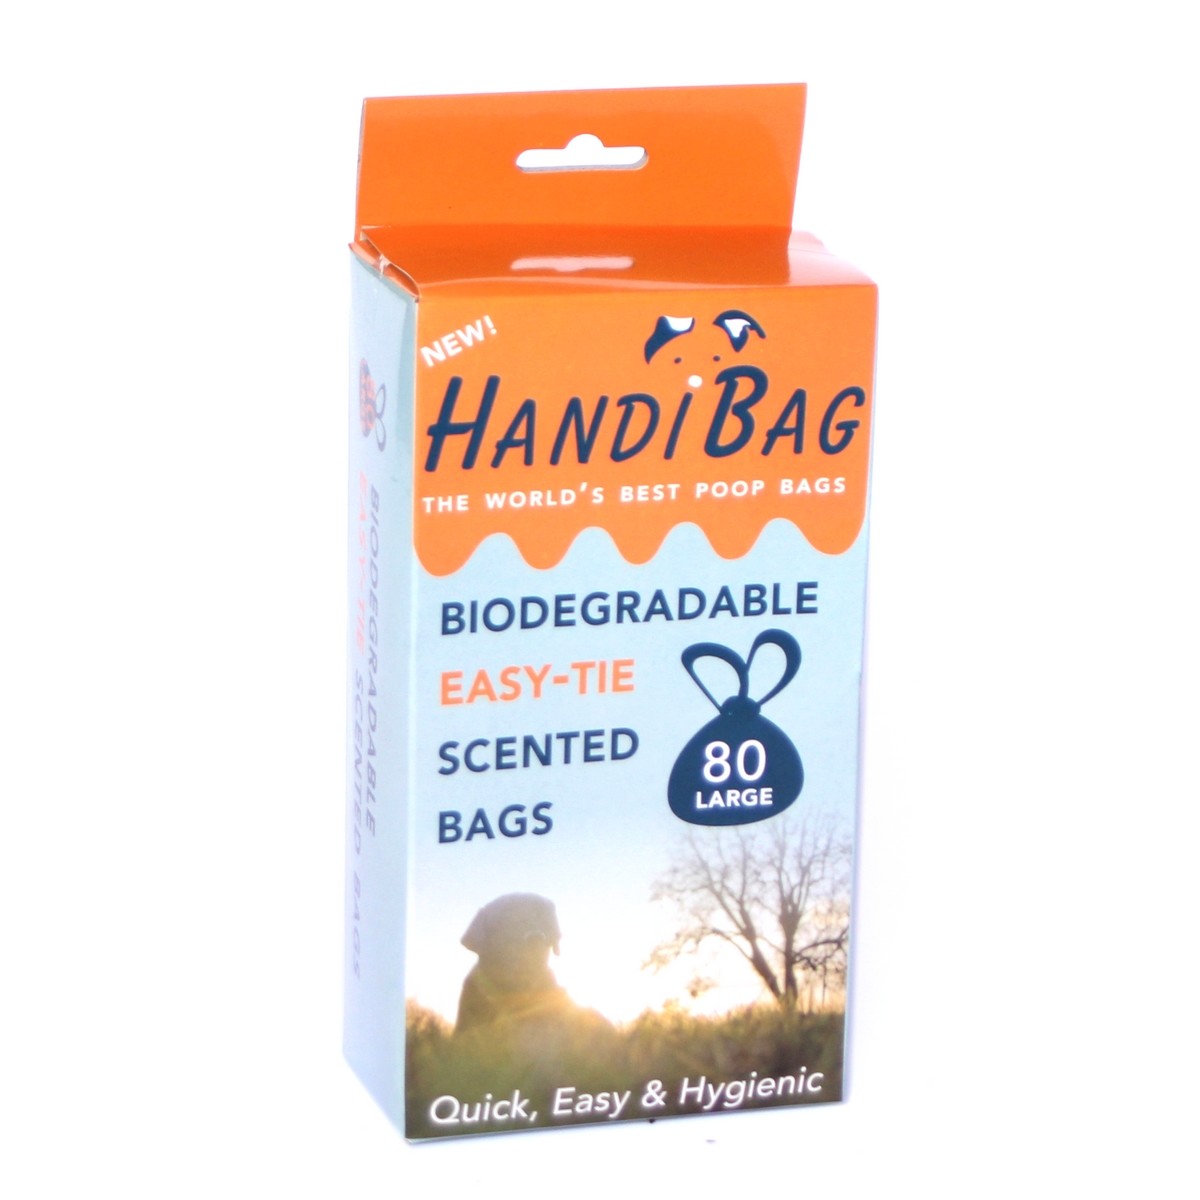 Afbeelding HandiScoop Bio Bags - 80 stuks door Tuinadvies.be